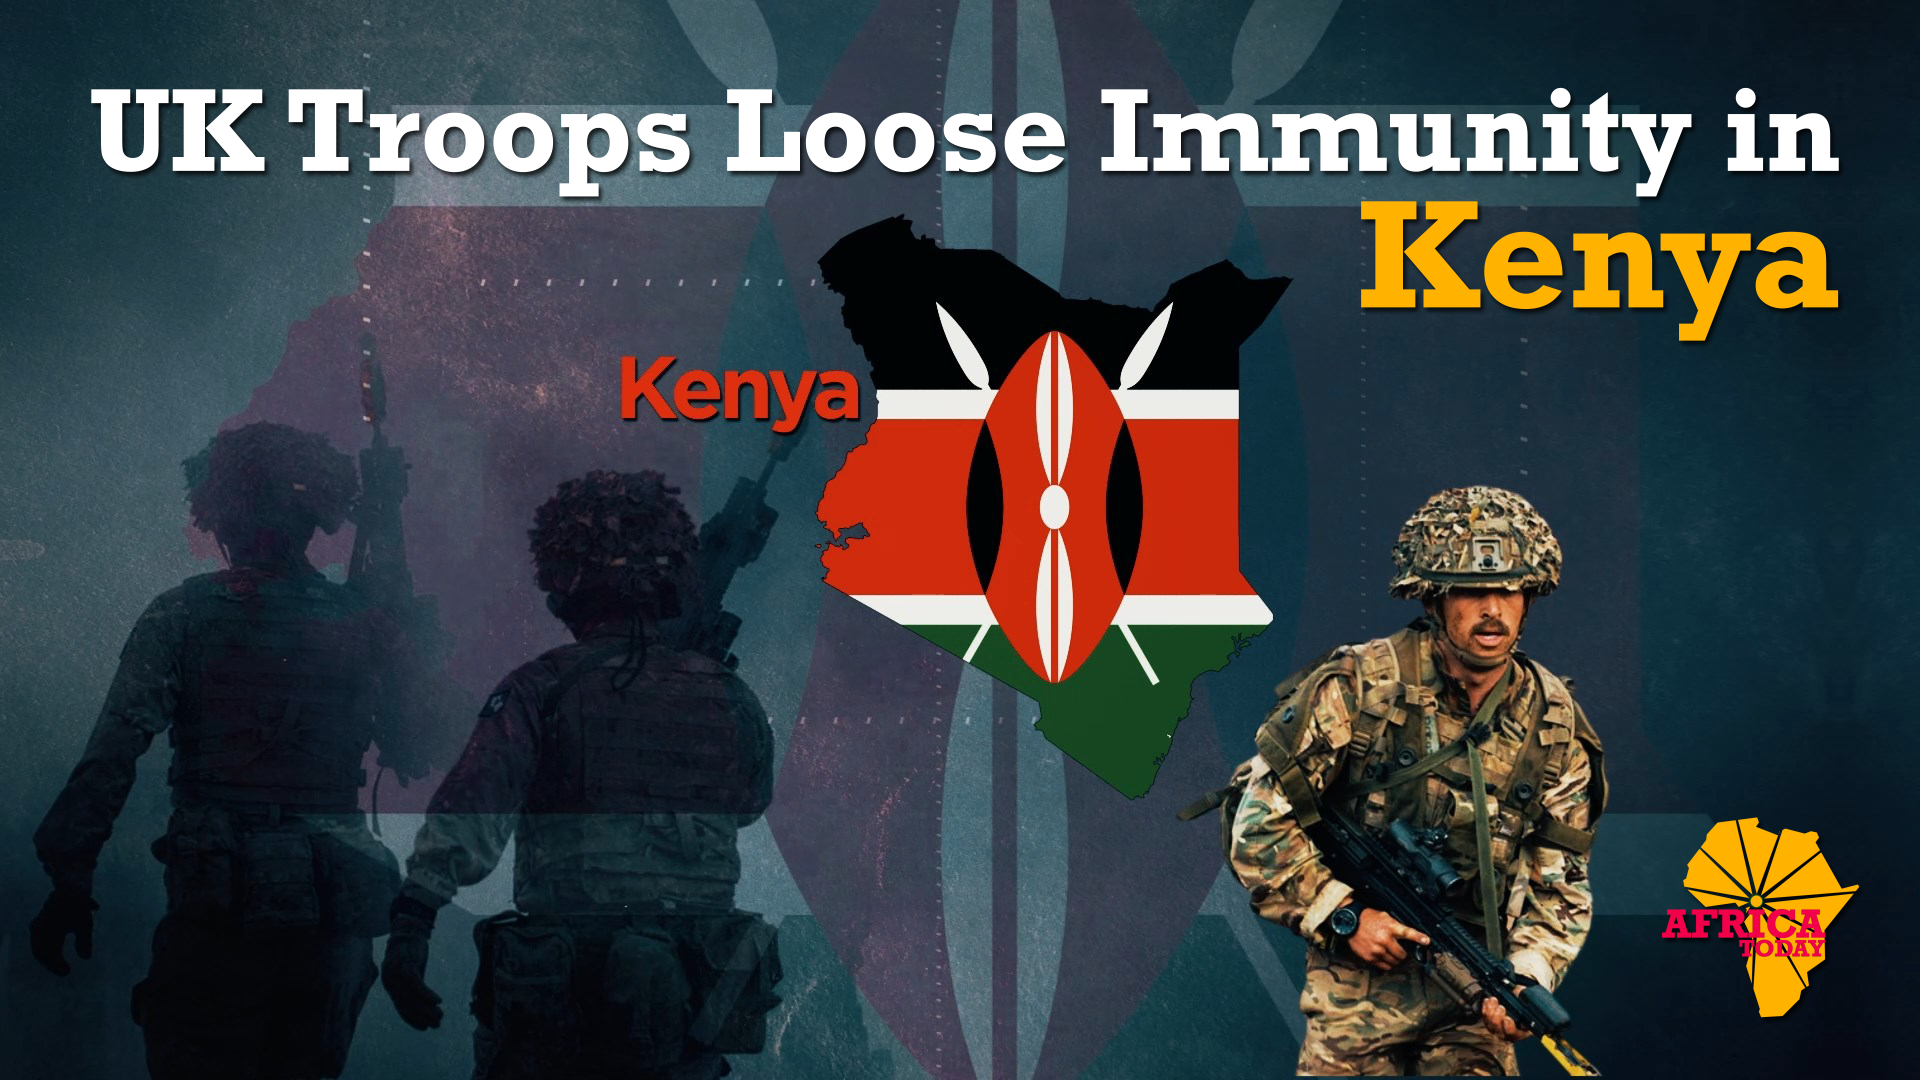 UK troops lose immunity in Kenya